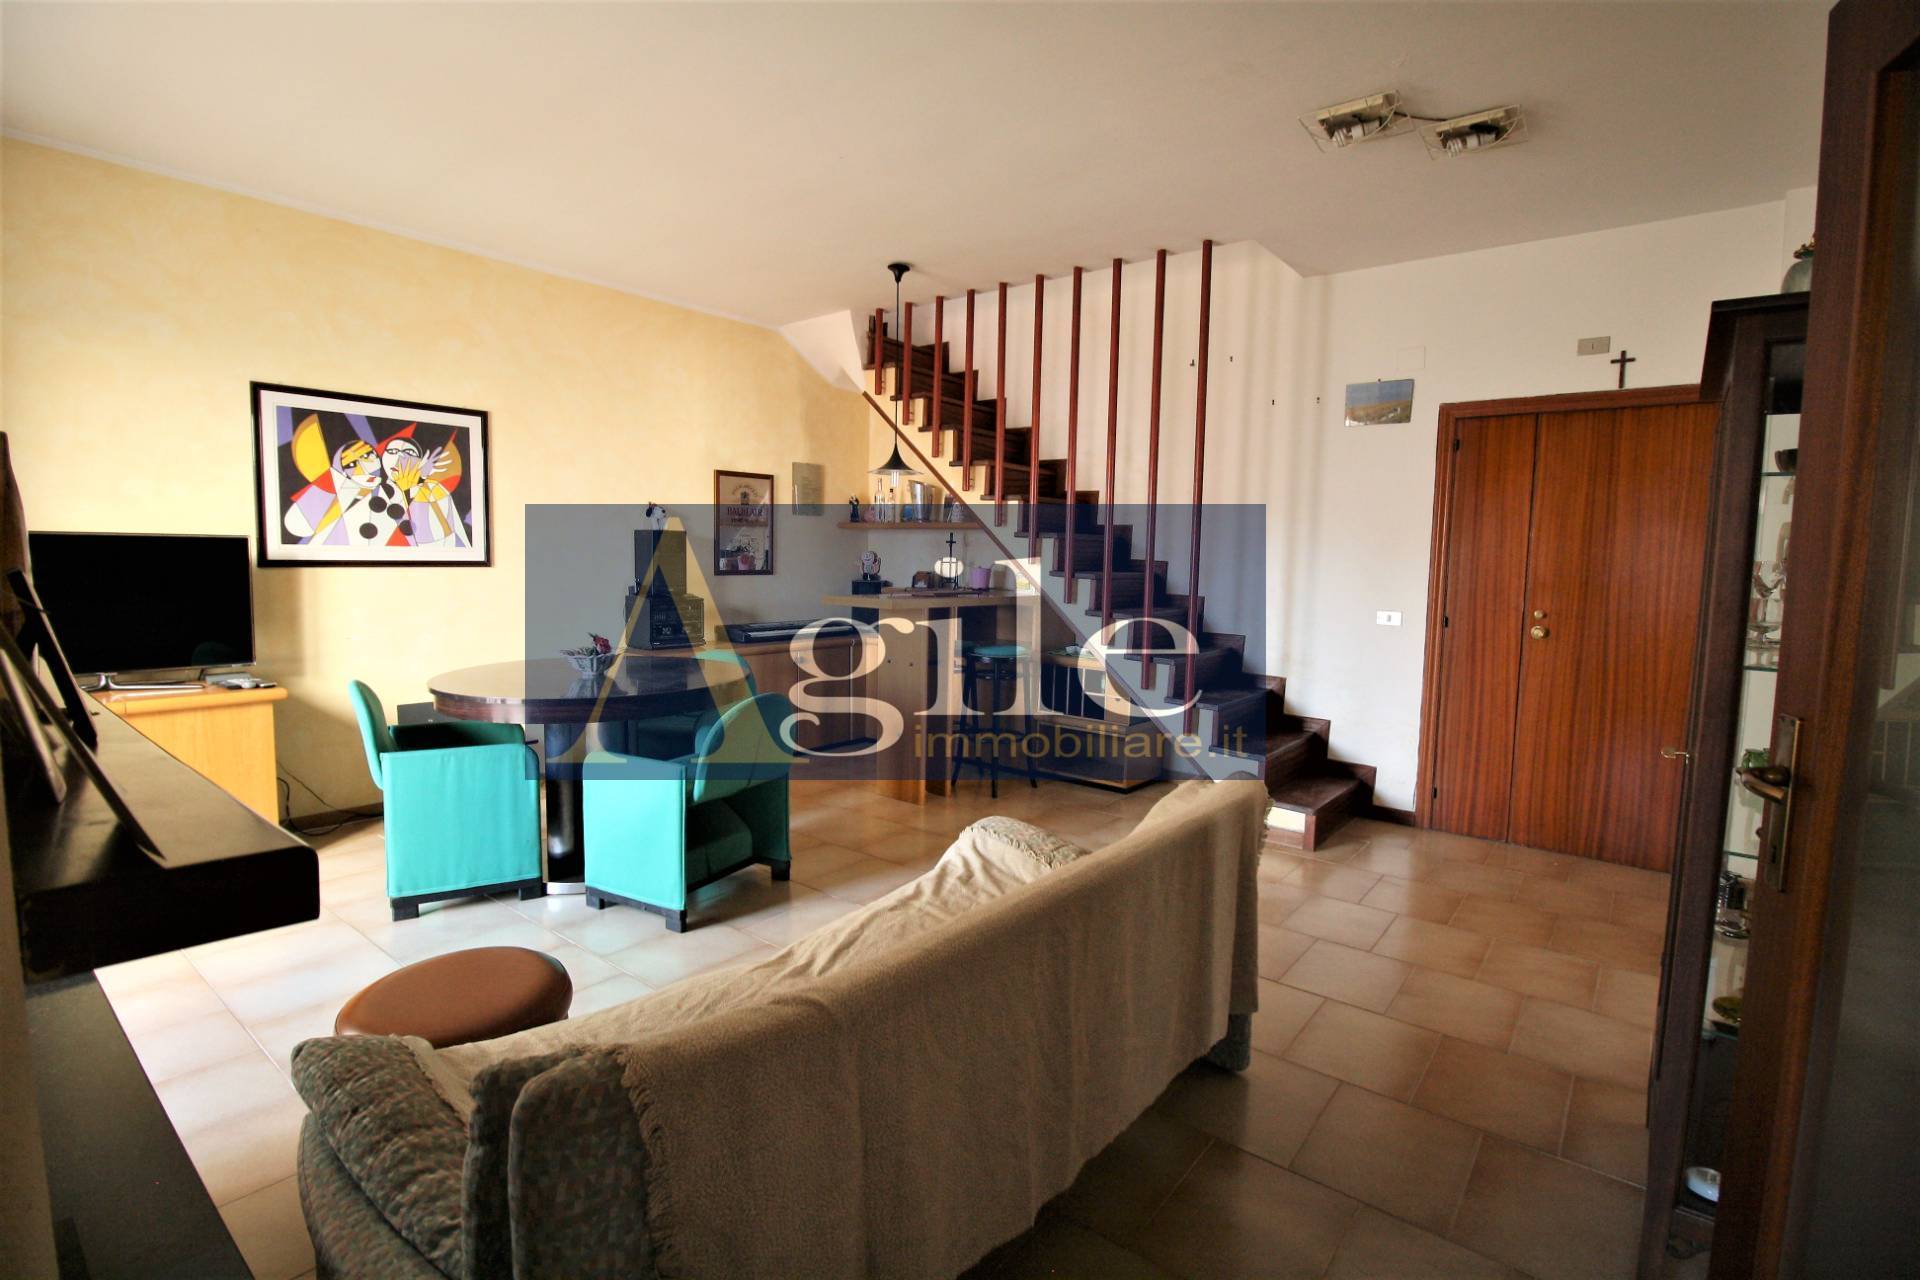 Appartamento in vendita a Folignano, 4 locali, zona Località: PianediMorro, prezzo € 125.000 | PortaleAgenzieImmobiliari.it